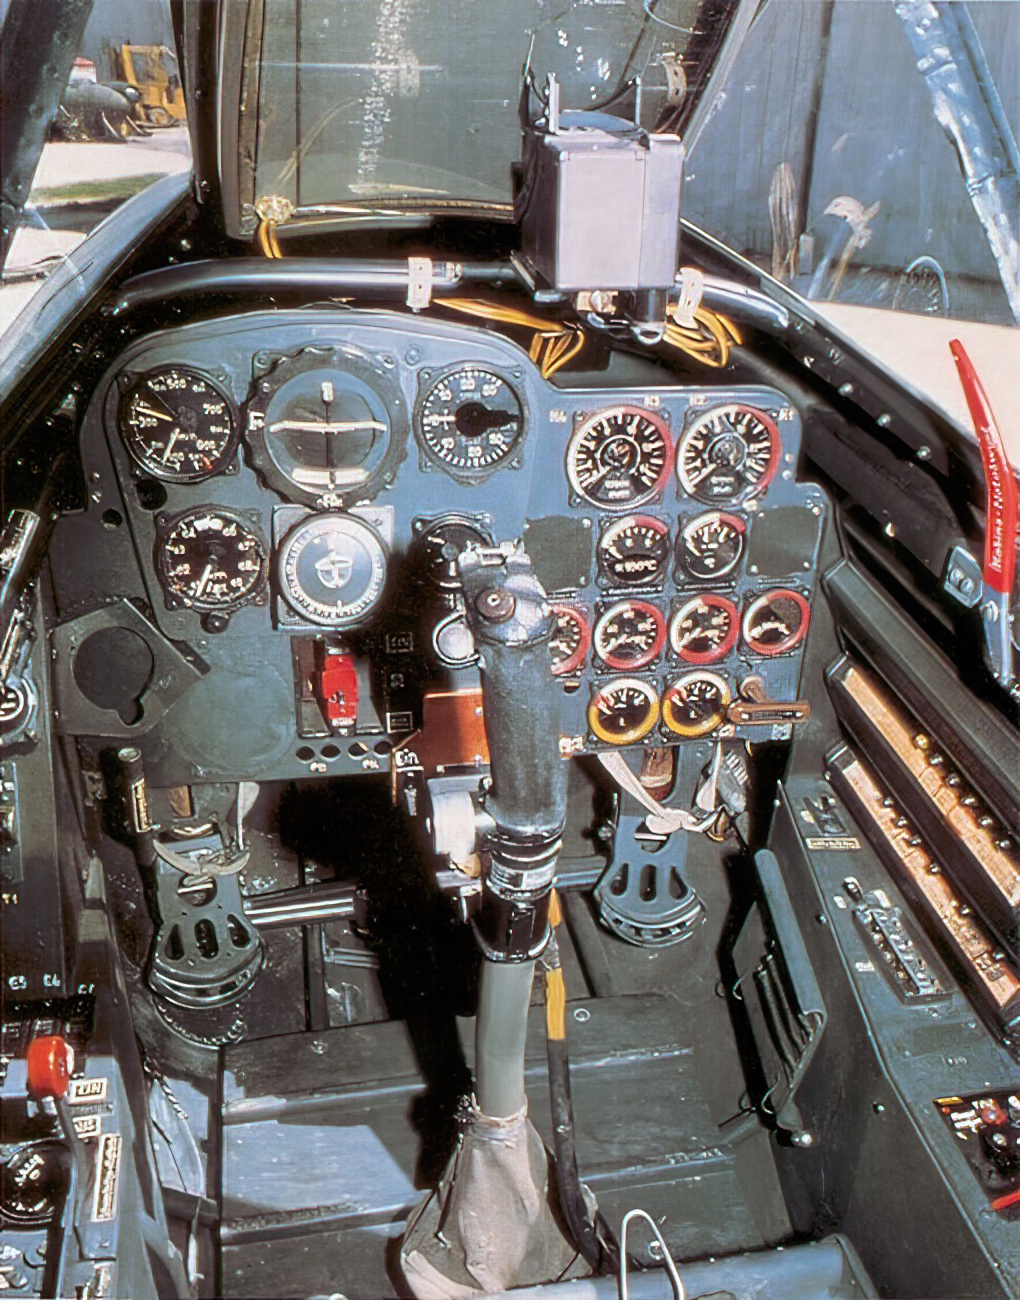 Me262 cockpit